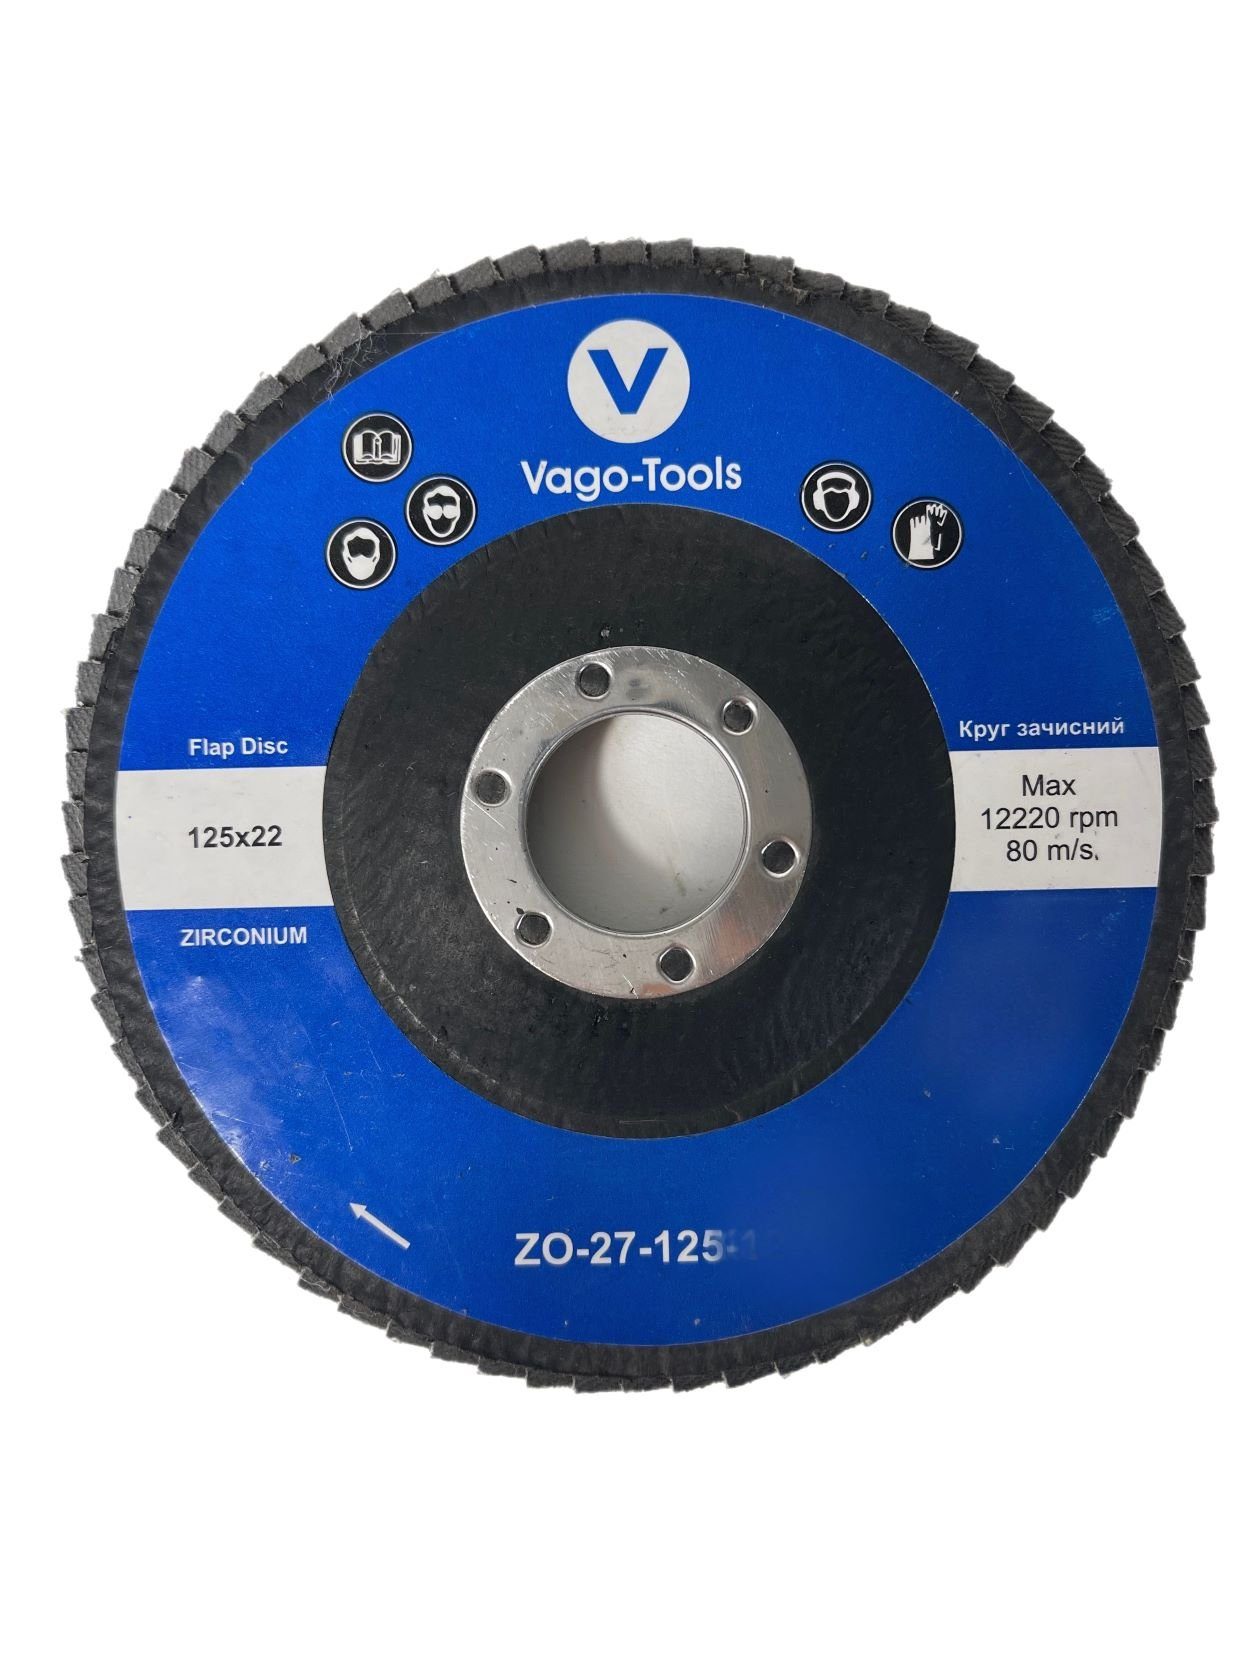 VaGo-Tools Schleifscheibe Fächerschleifscheiben 125mm P60 flach Blau 20x, (Packung)